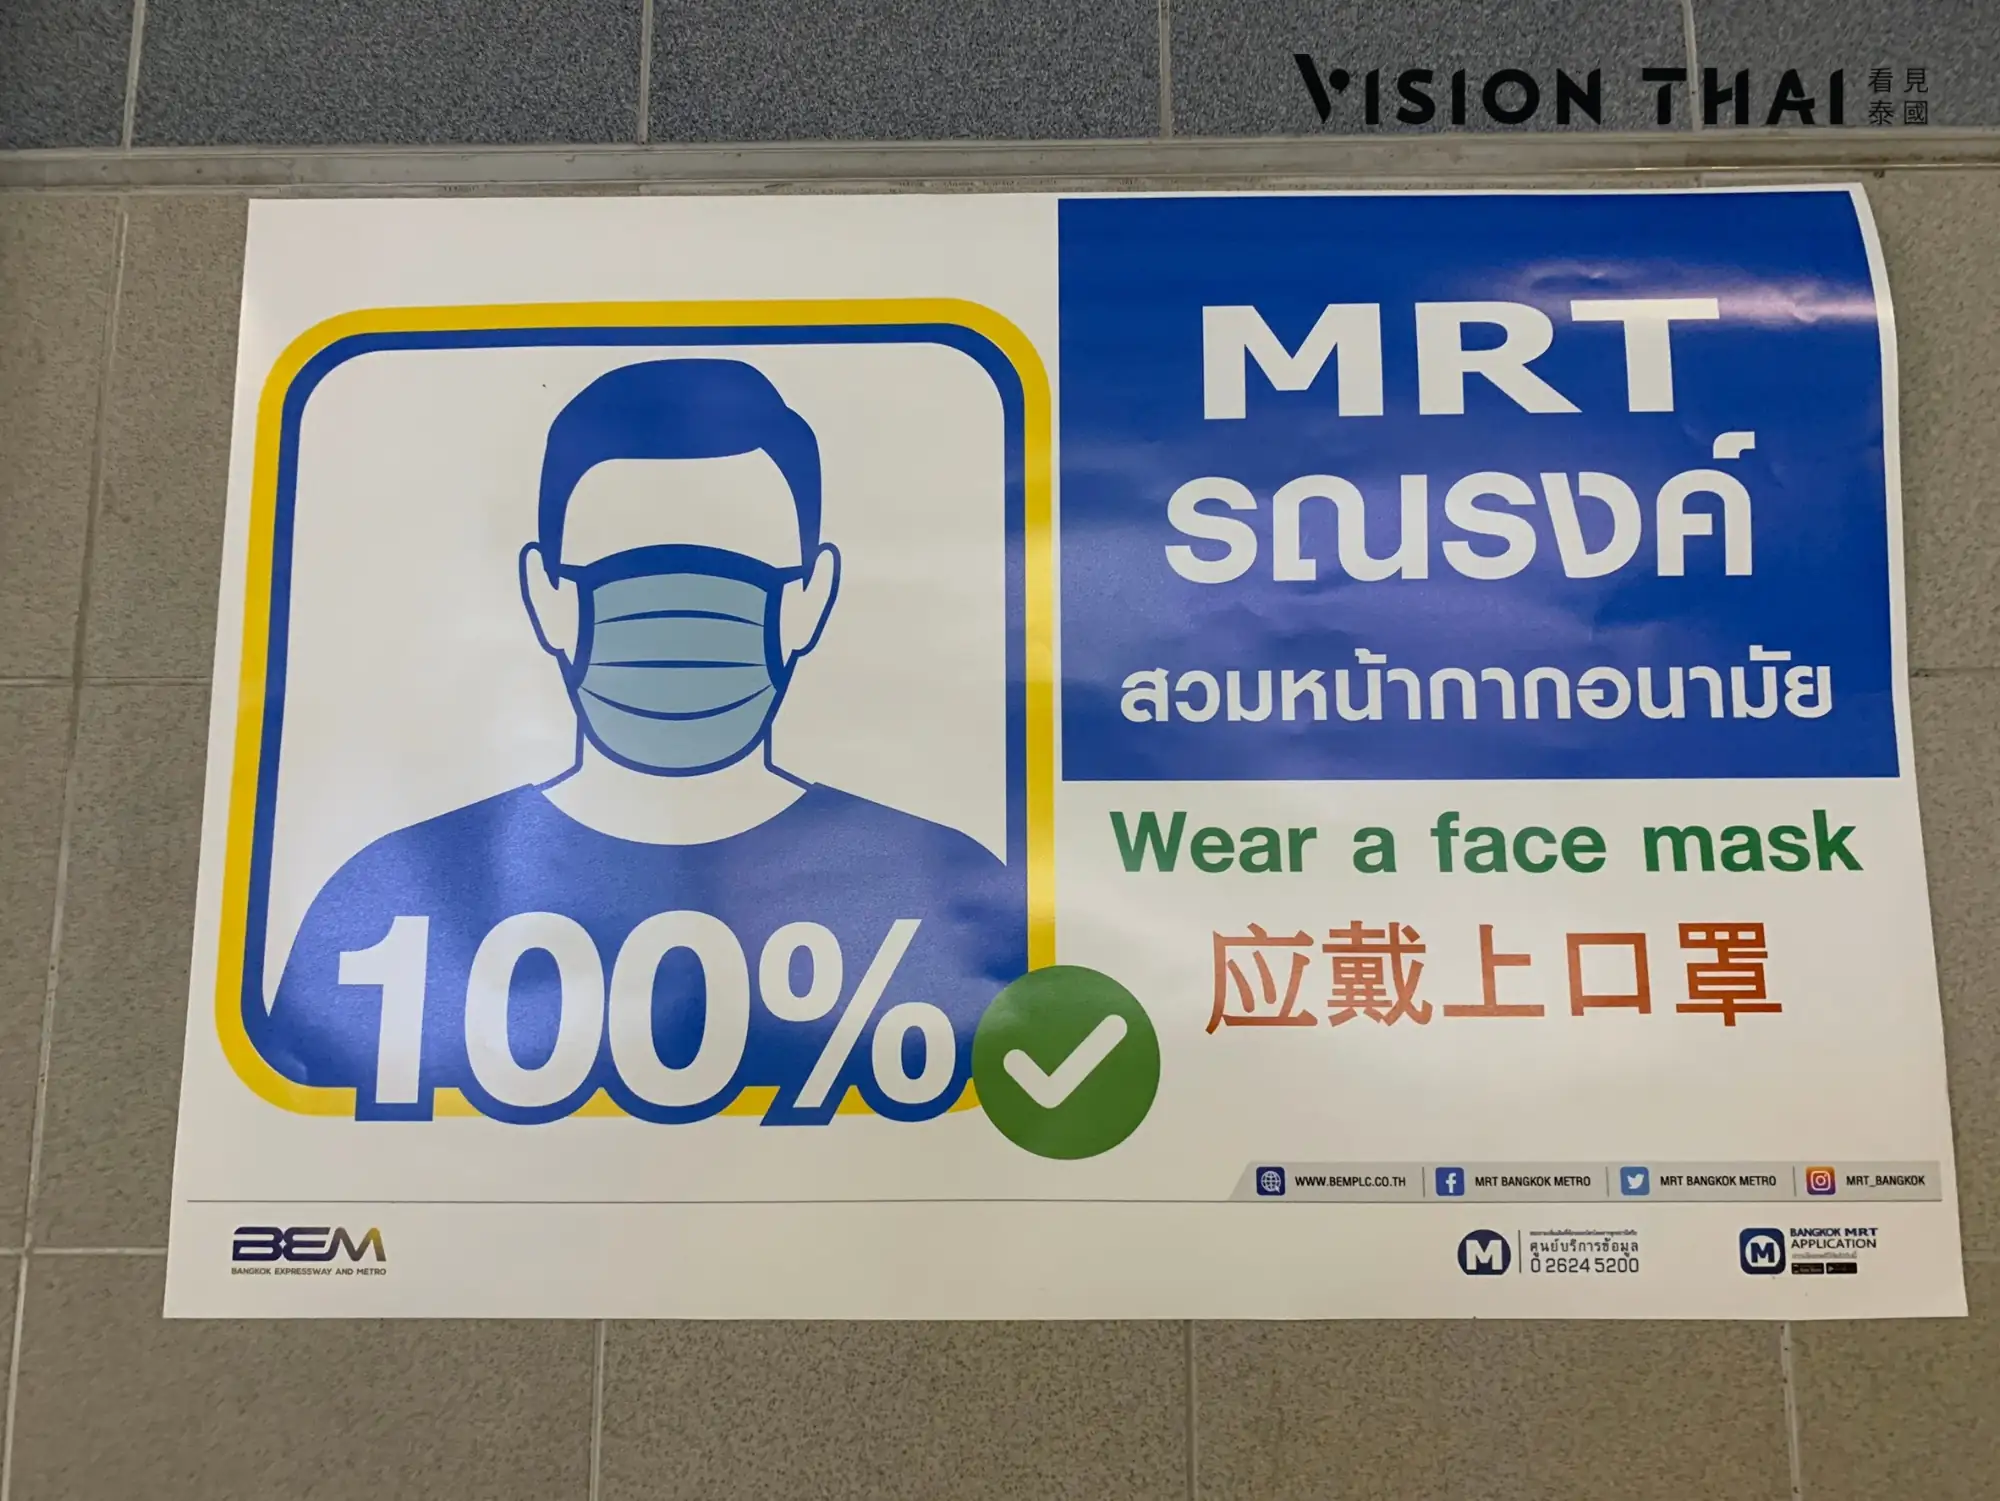 曼谷地铁MRT规定乘客戴口罩